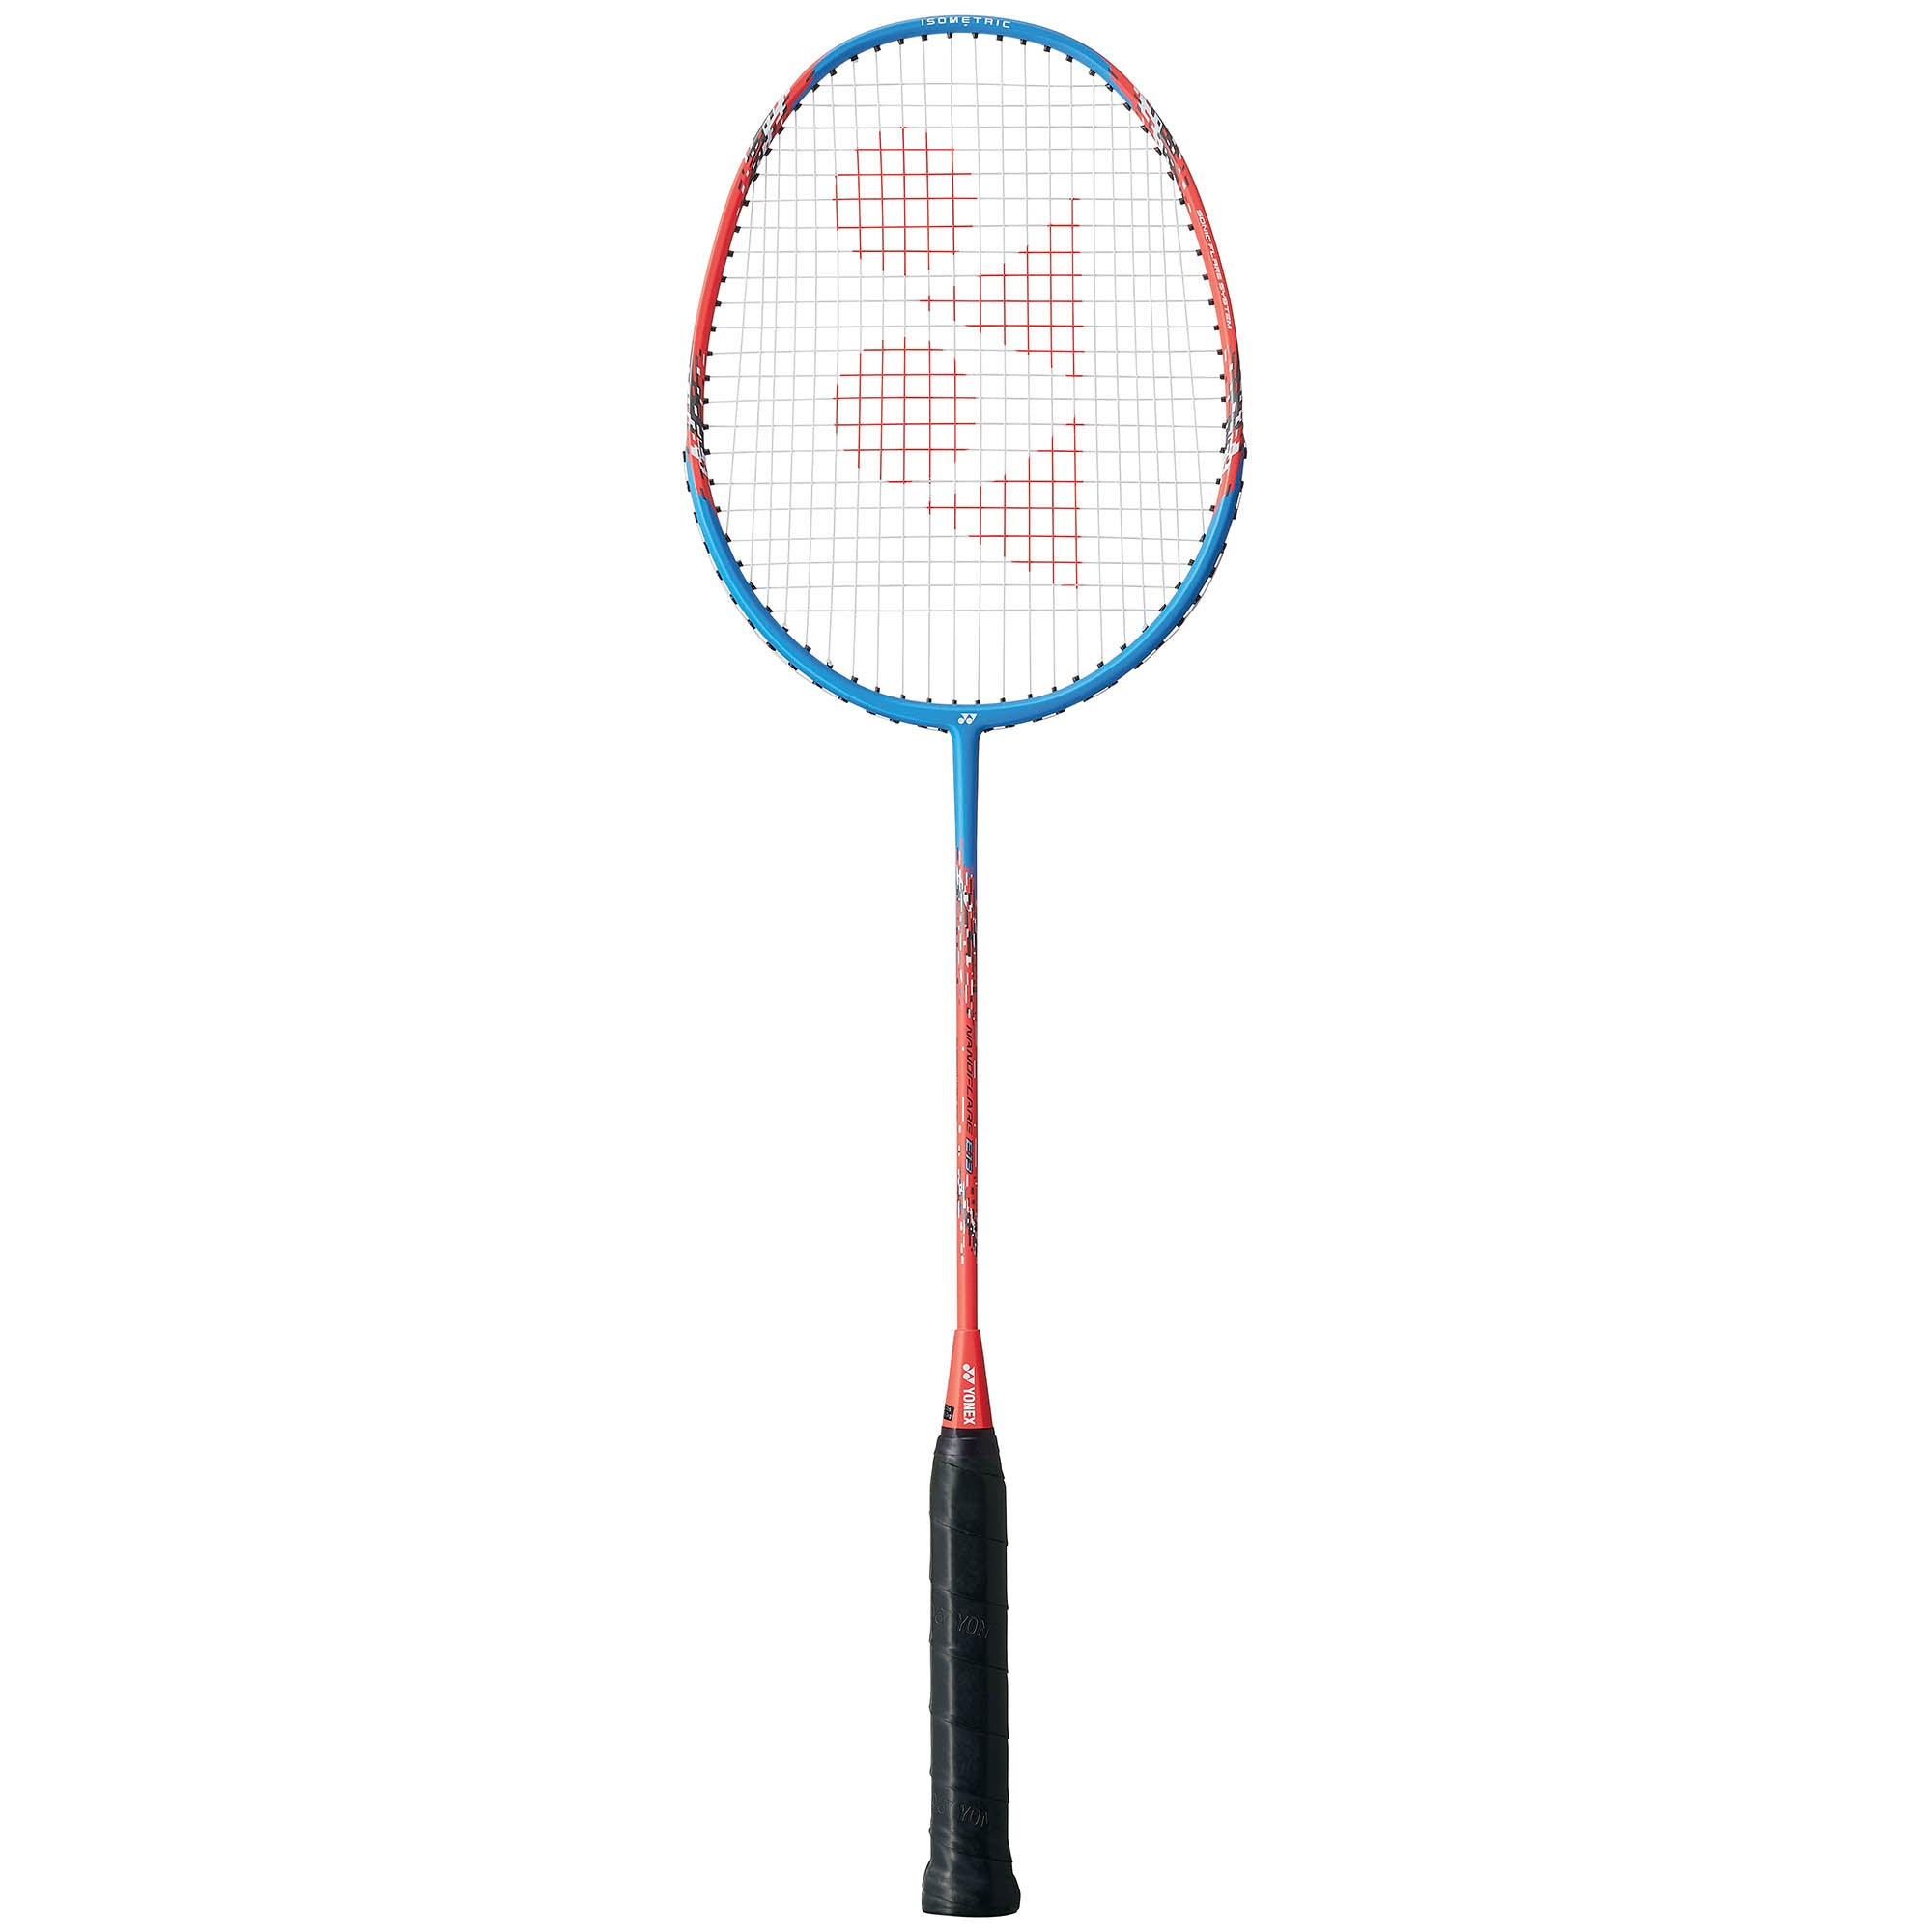 Yonex Nanoflare E13 Badminton Racket